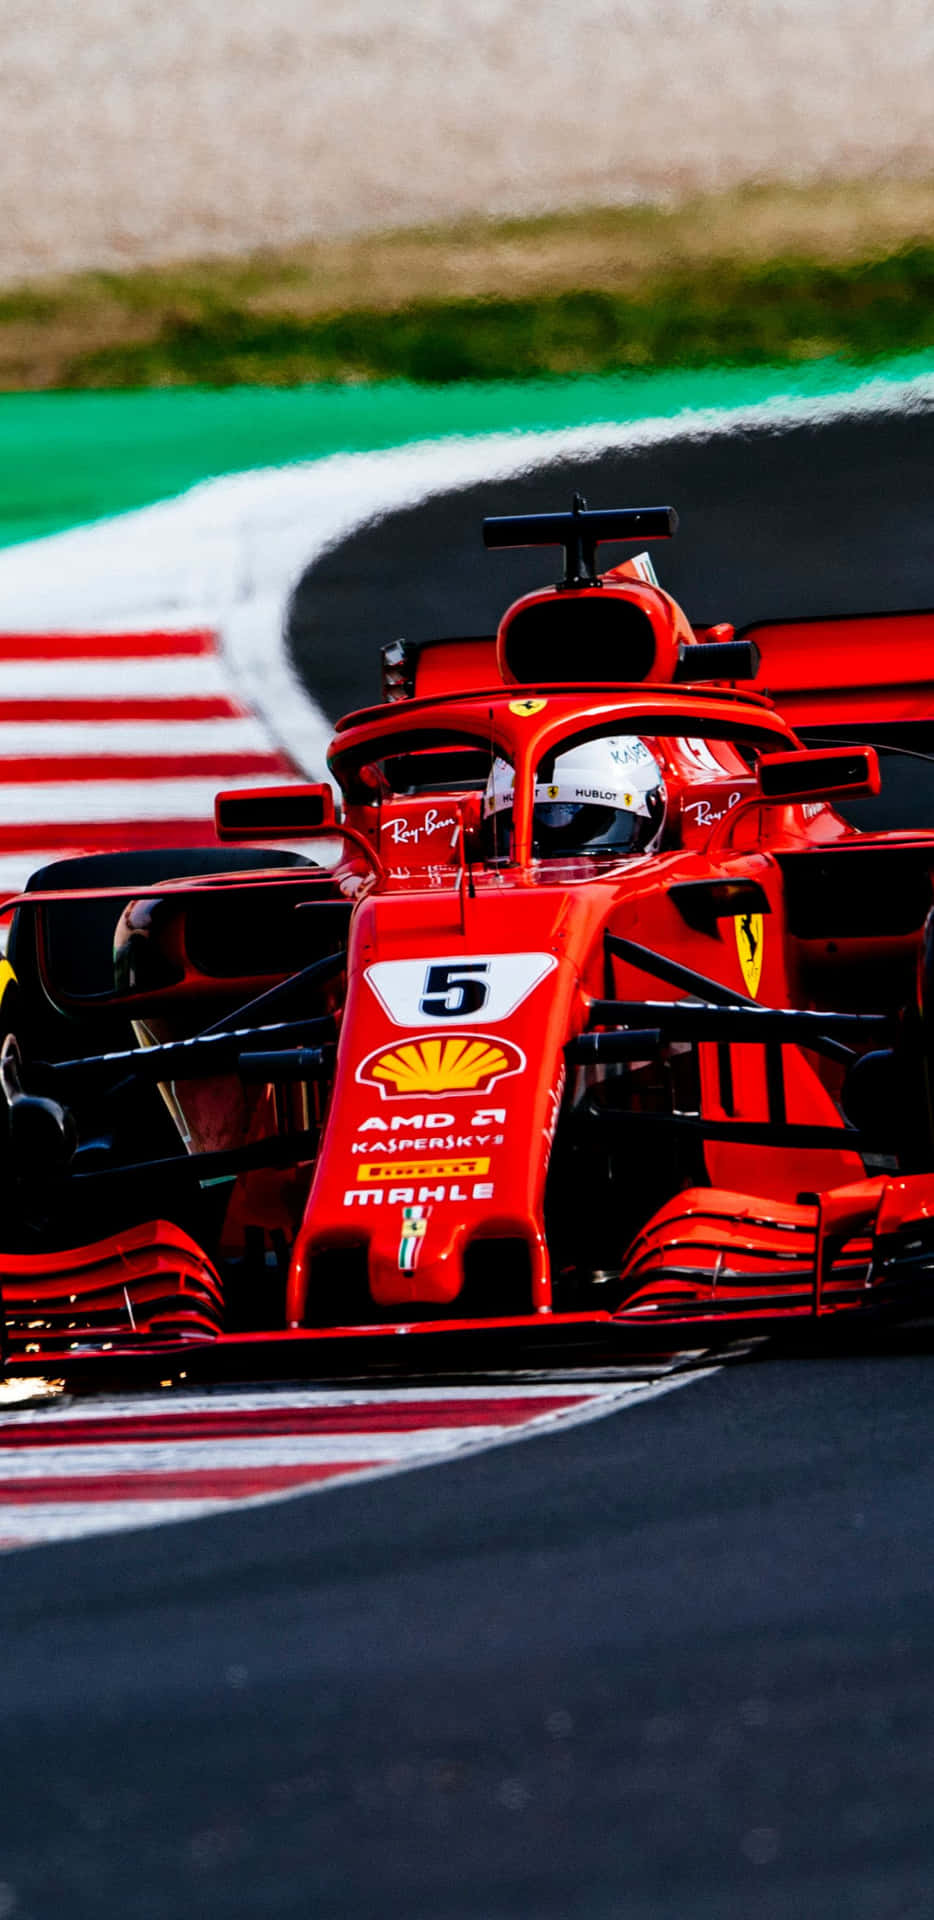 Fondode Pantalla Ferrari Racing Track Pixel 3xl F1 2018